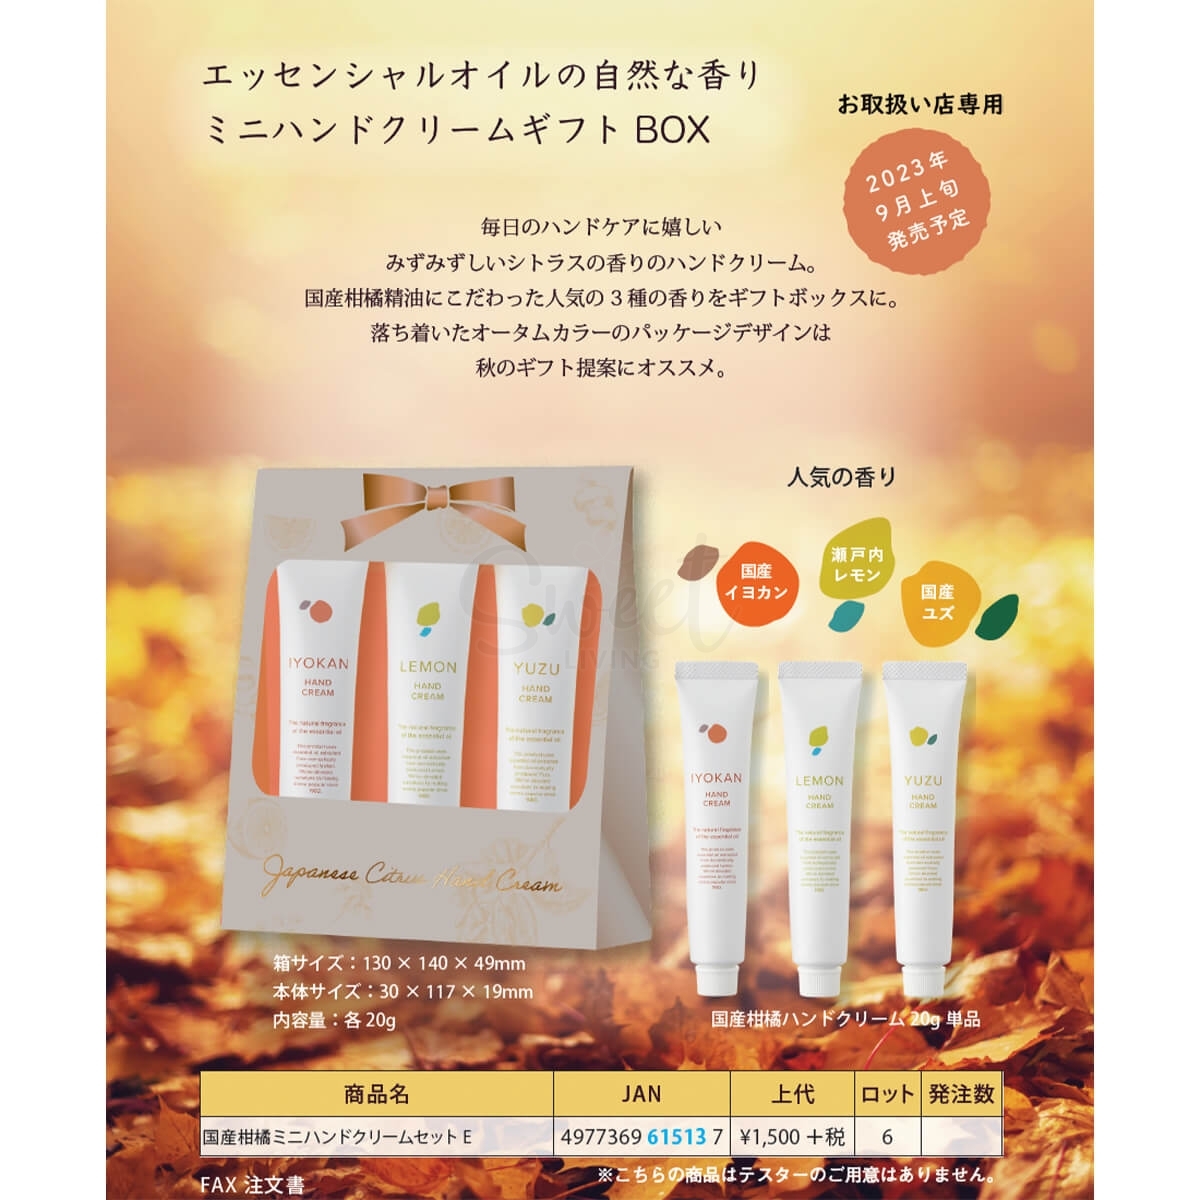 【日本 Birken】 Daily Aroma 高知县 柚子 YUZU 天然植物精油护手霜mini套组 一盒3支20g （柑橘+柠檬+柚子） -  - 3@ - Sweet Living